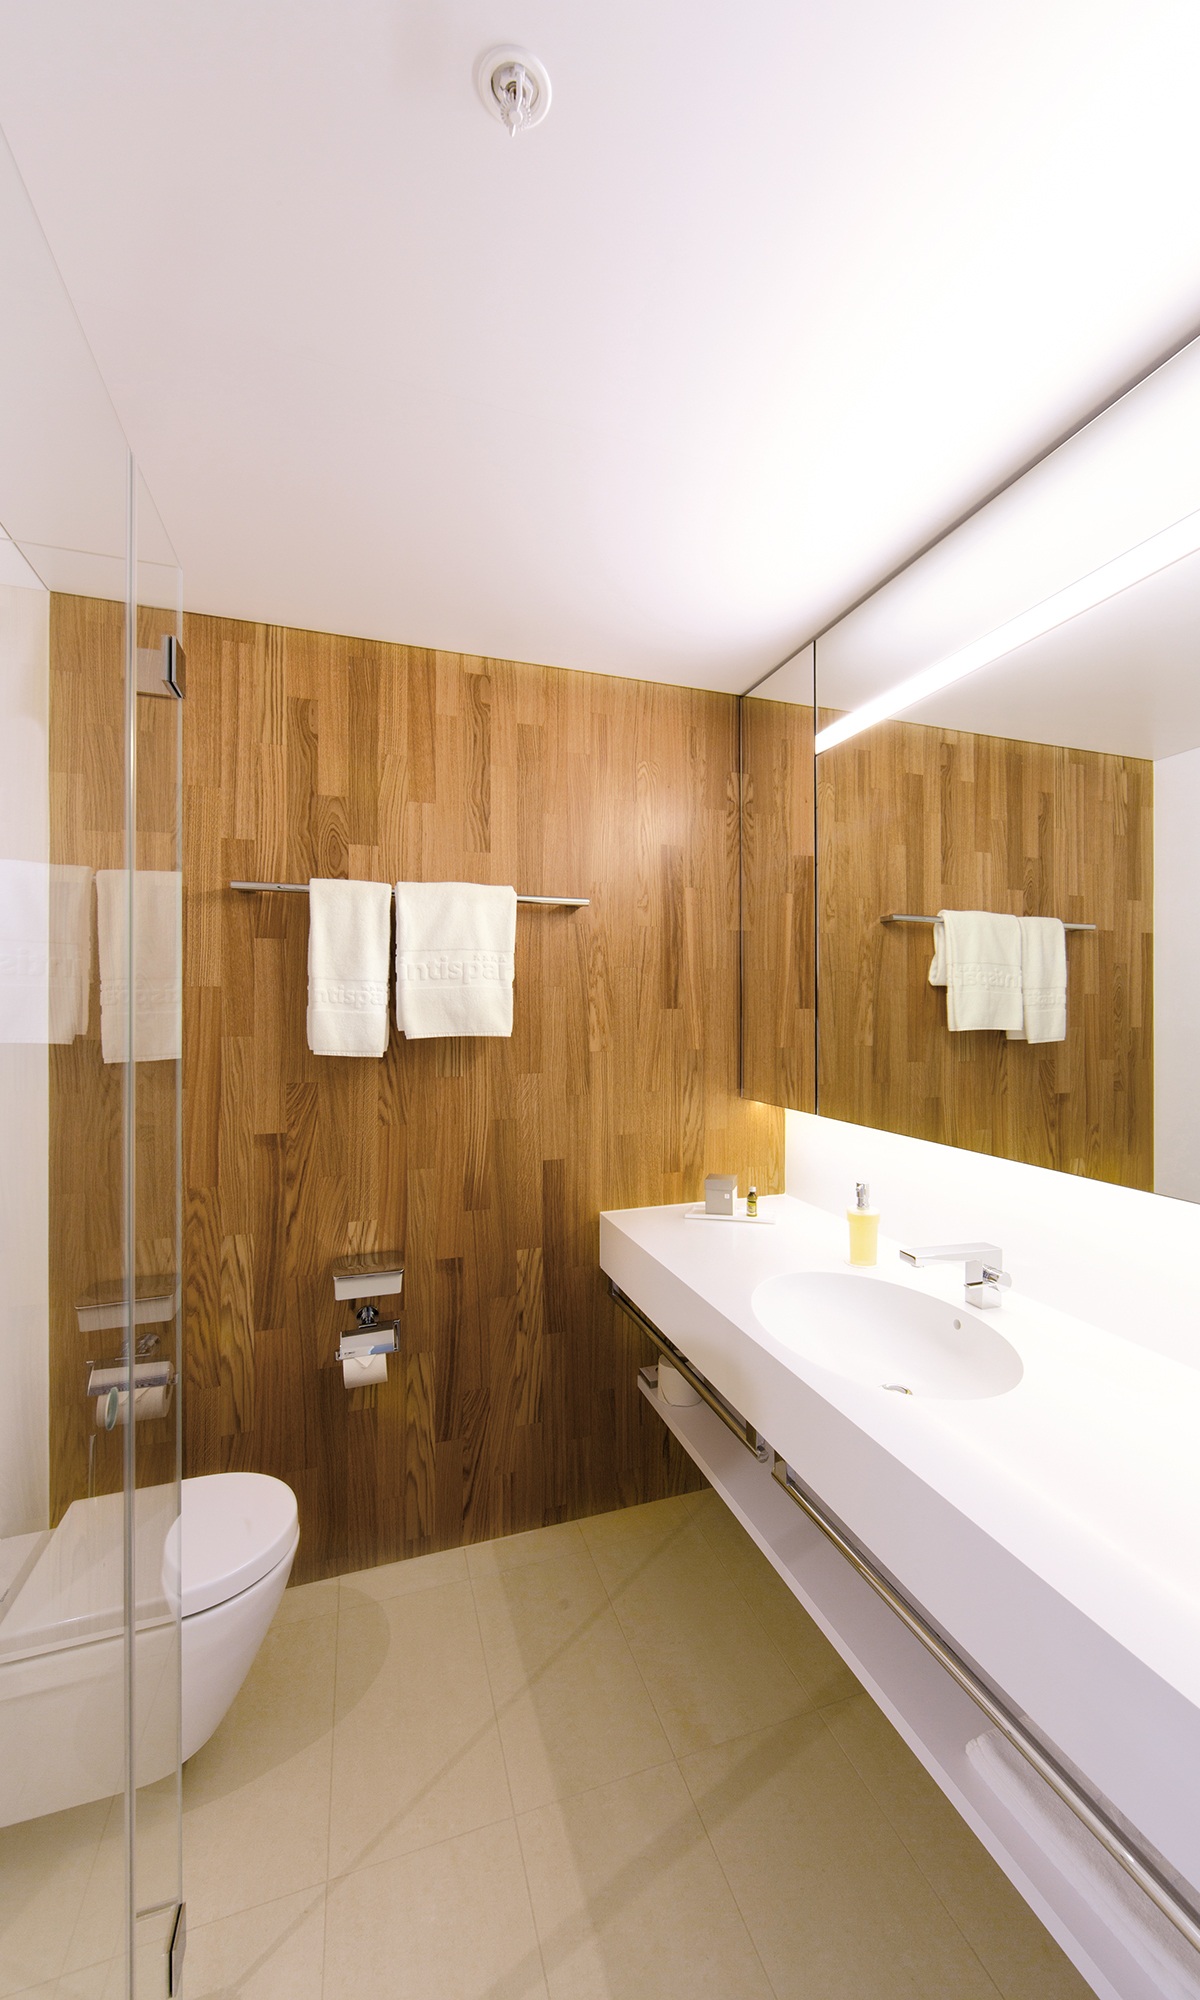 Badezimmer eines Hotelzimmers im Hotel Säntispark mit einer Holzwand, einer Glasdusche und einer hellen Ausstattung